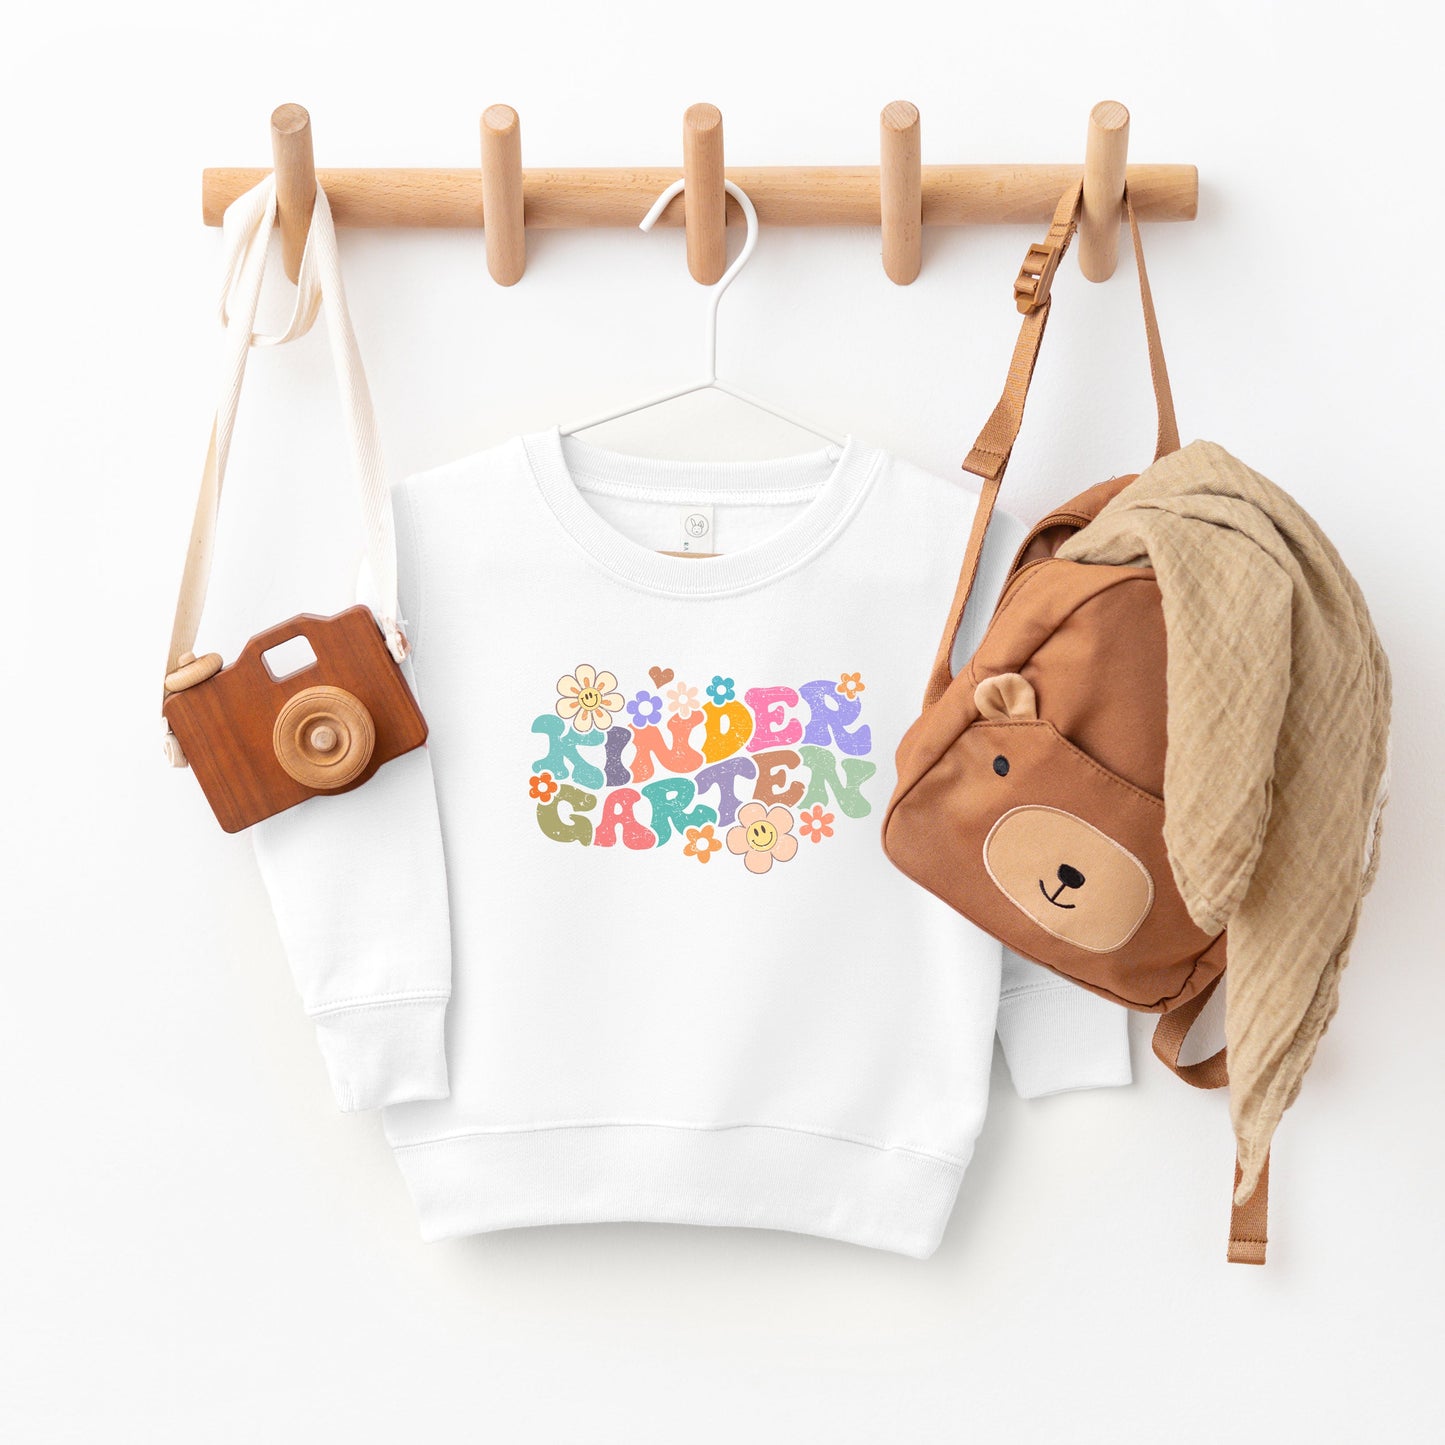 Kindergarten Flowers | Toddler Graphic Sweatshirt